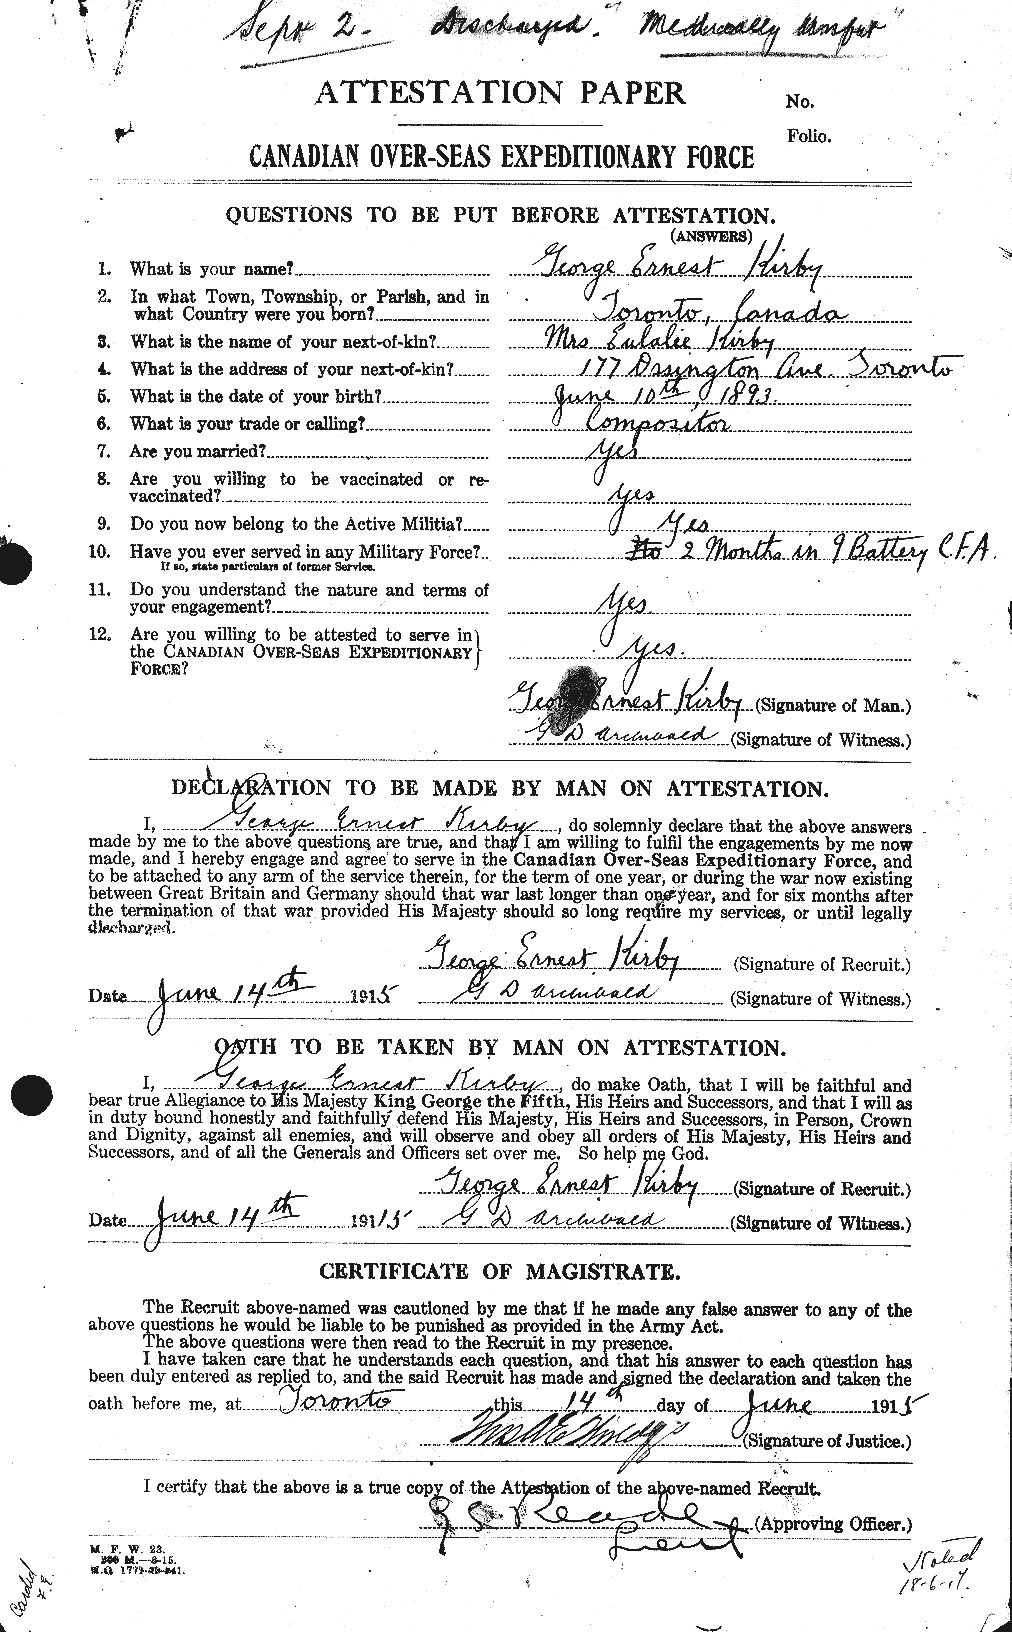 Dossiers du Personnel de la Première Guerre mondiale - CEC 437197a